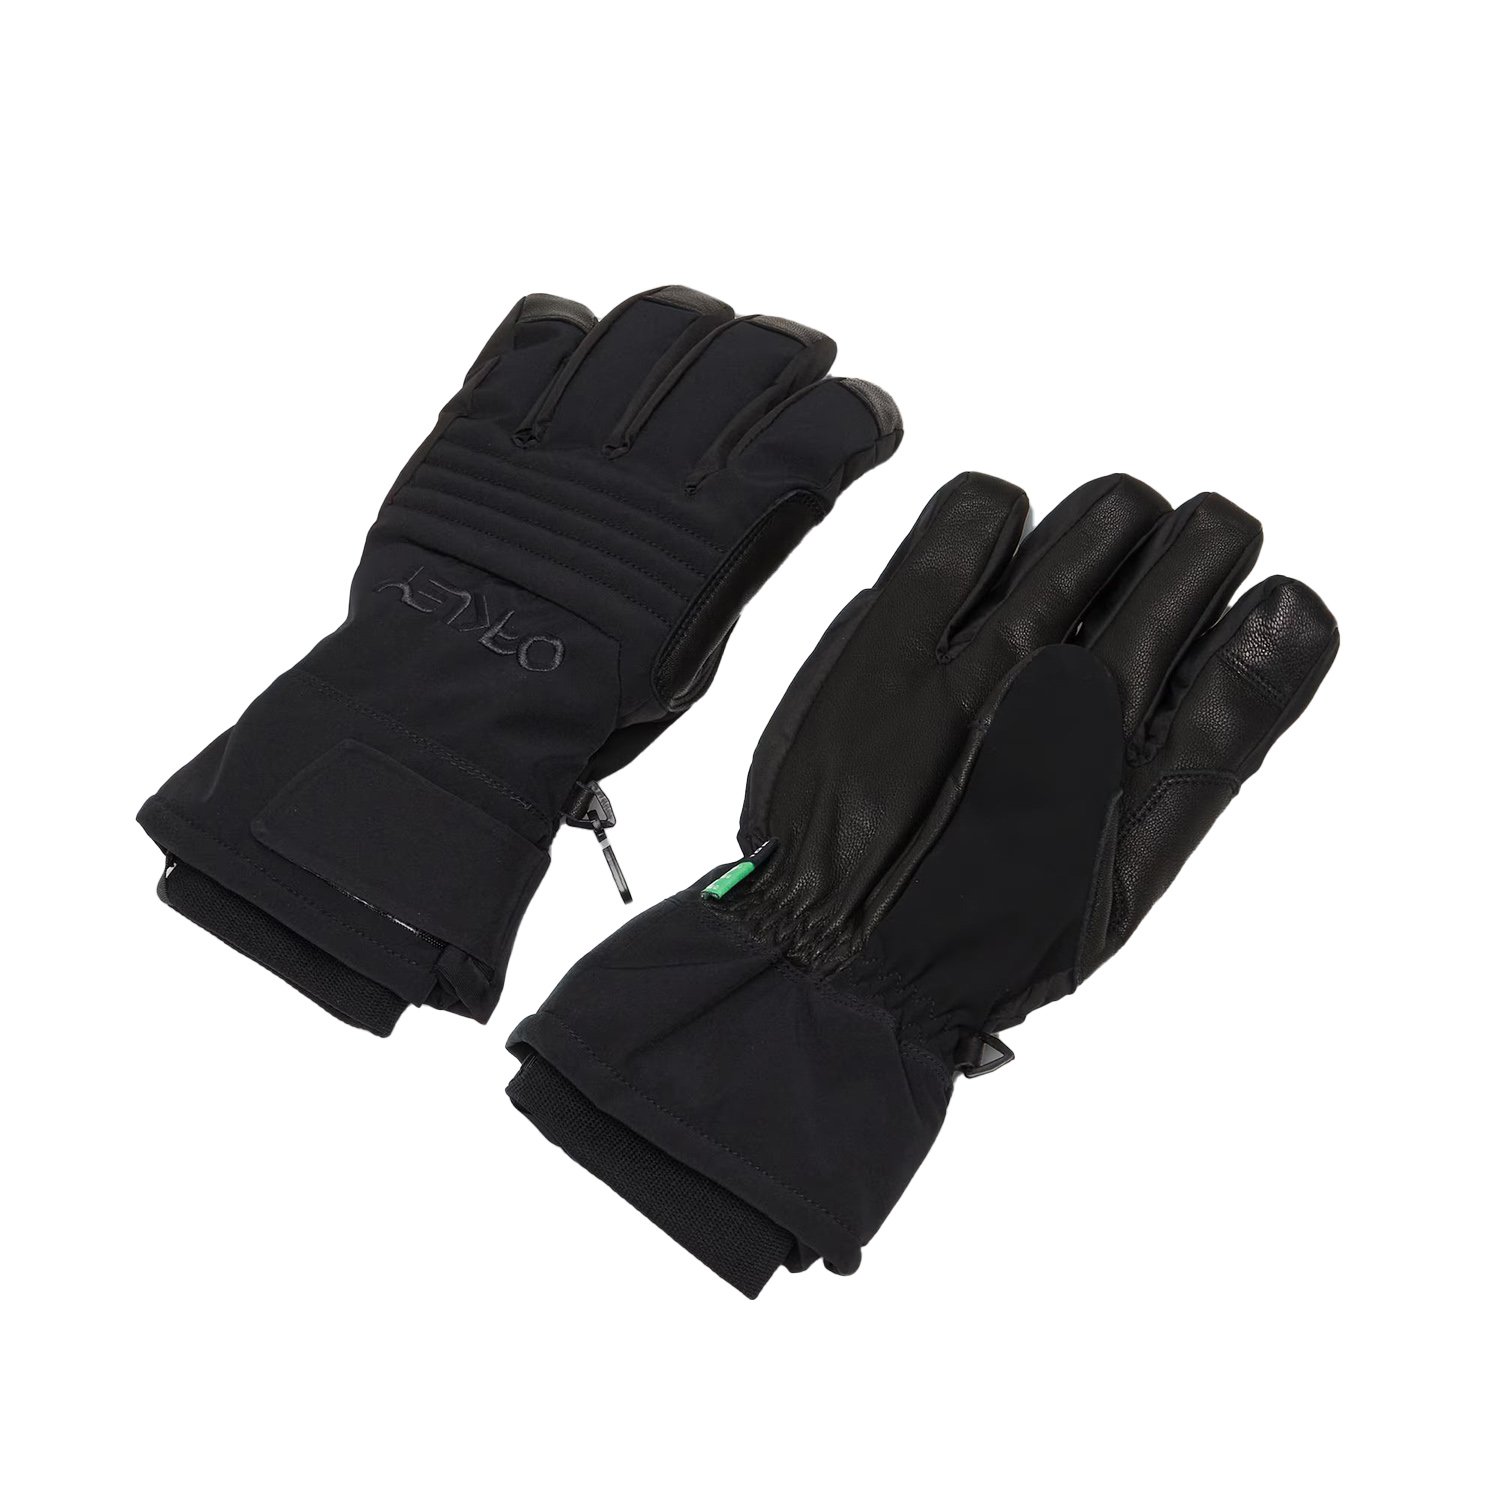 Qakley B1B Glove Erkek Eldiven - Siyah - 1